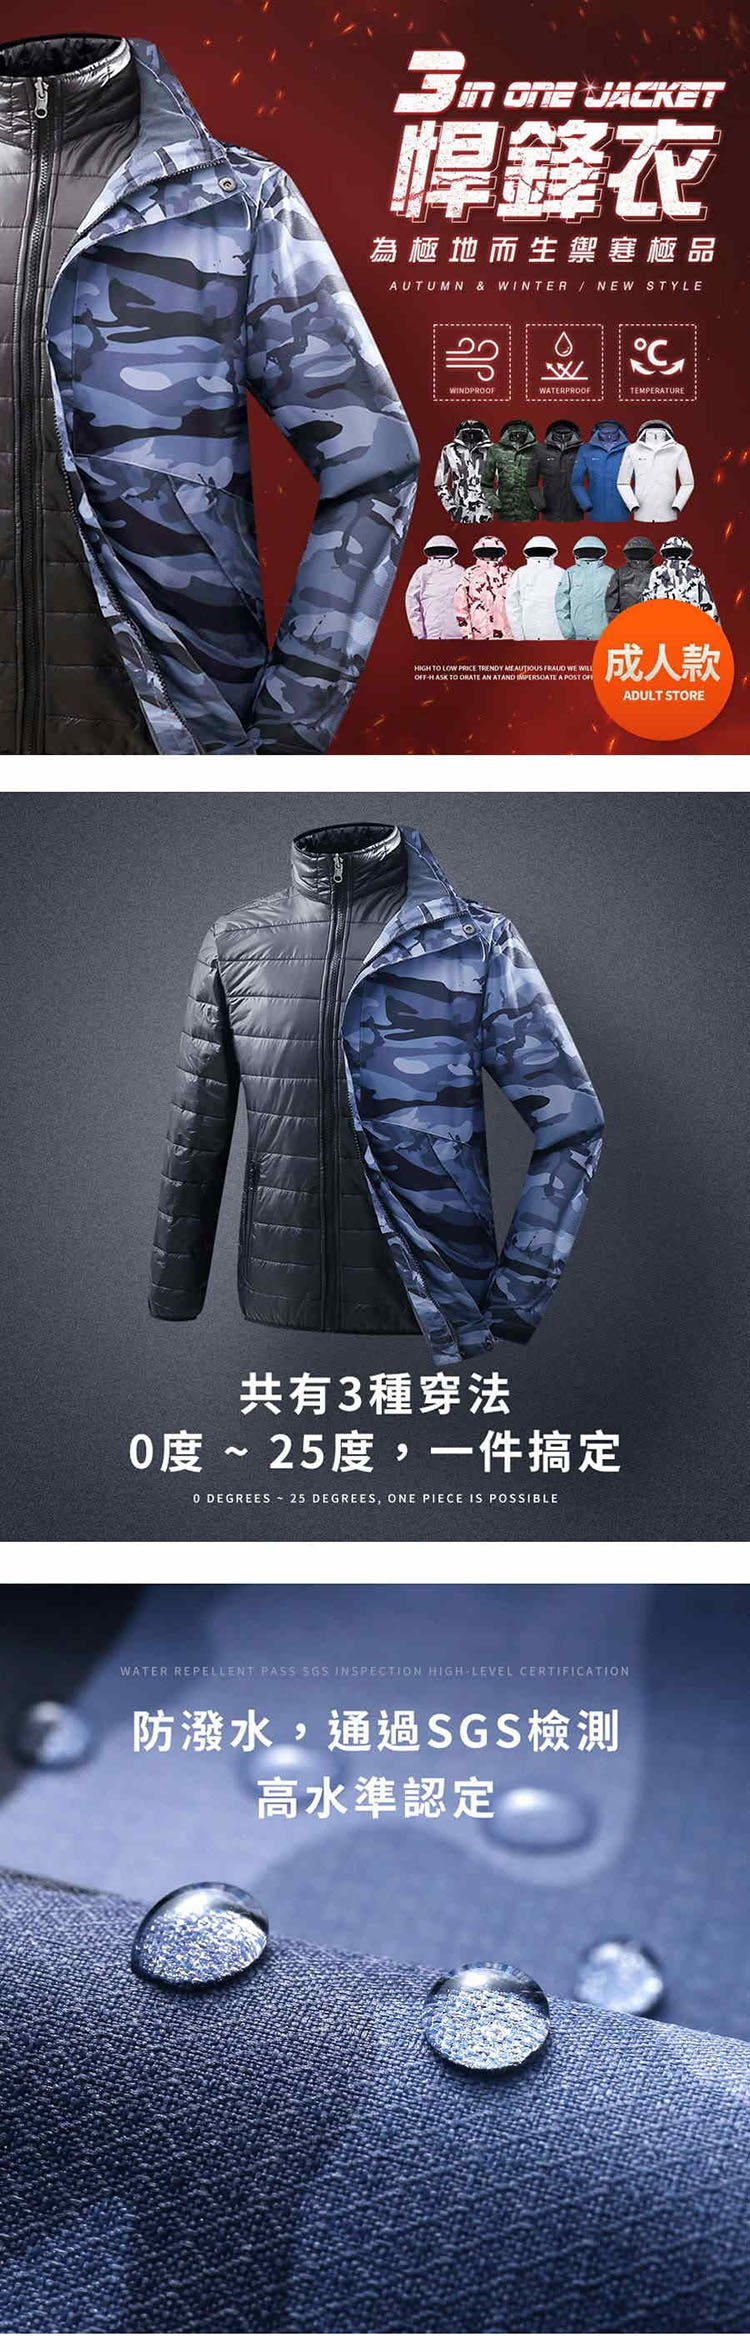 【悍鋒衣】3合1機能外套．為極地而生禦寒極品．SGS多重認證